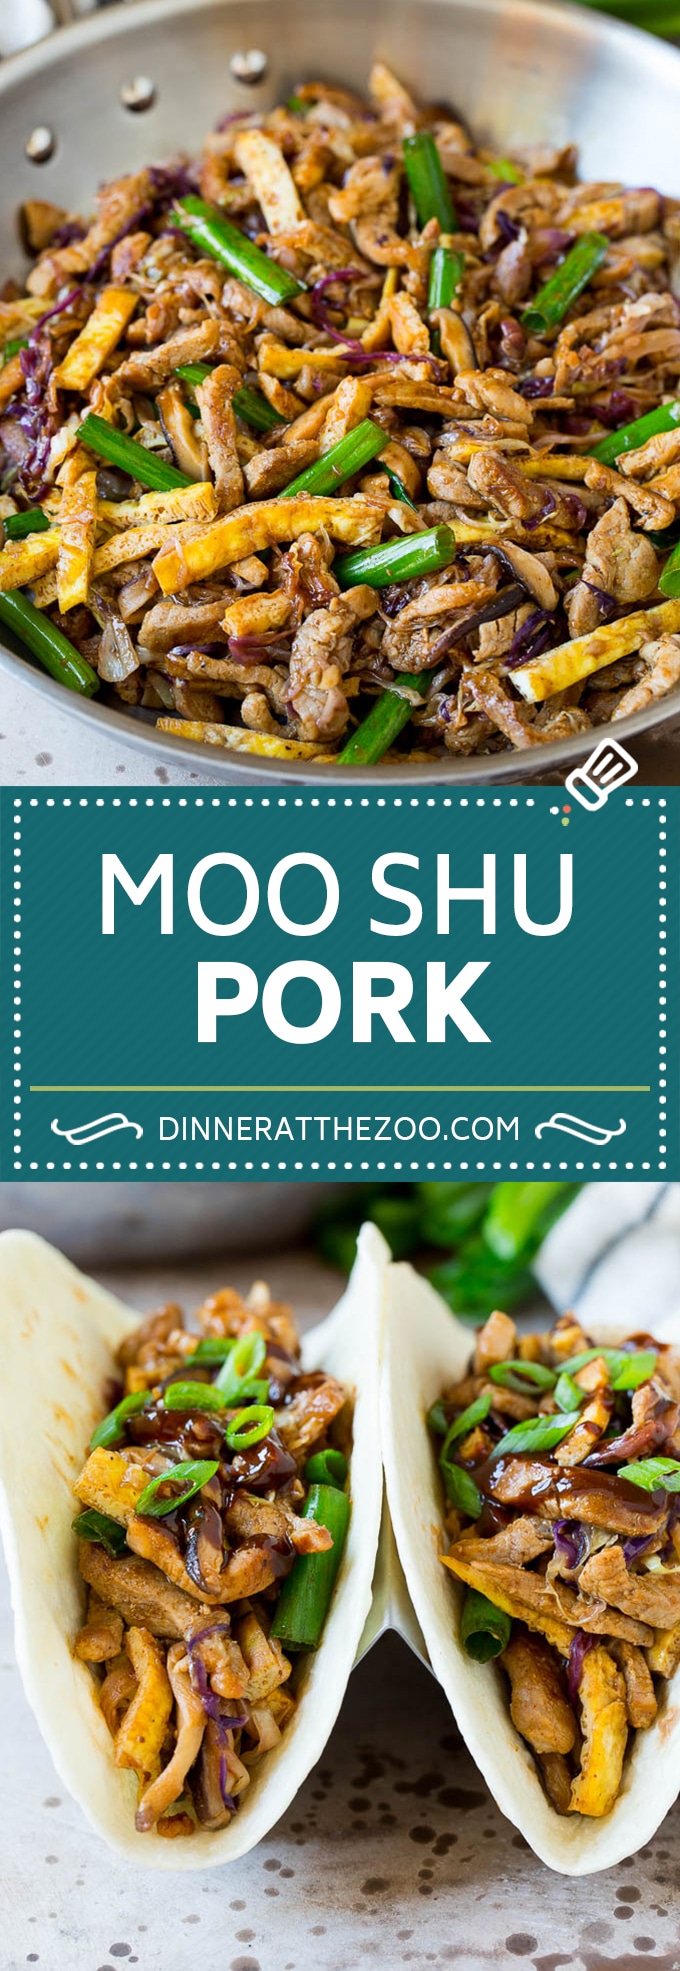 Este moo shu de cerdo es un lomo de cerdo en rodajas finas salteado con verduras y huevos, todo en una salsa salada.